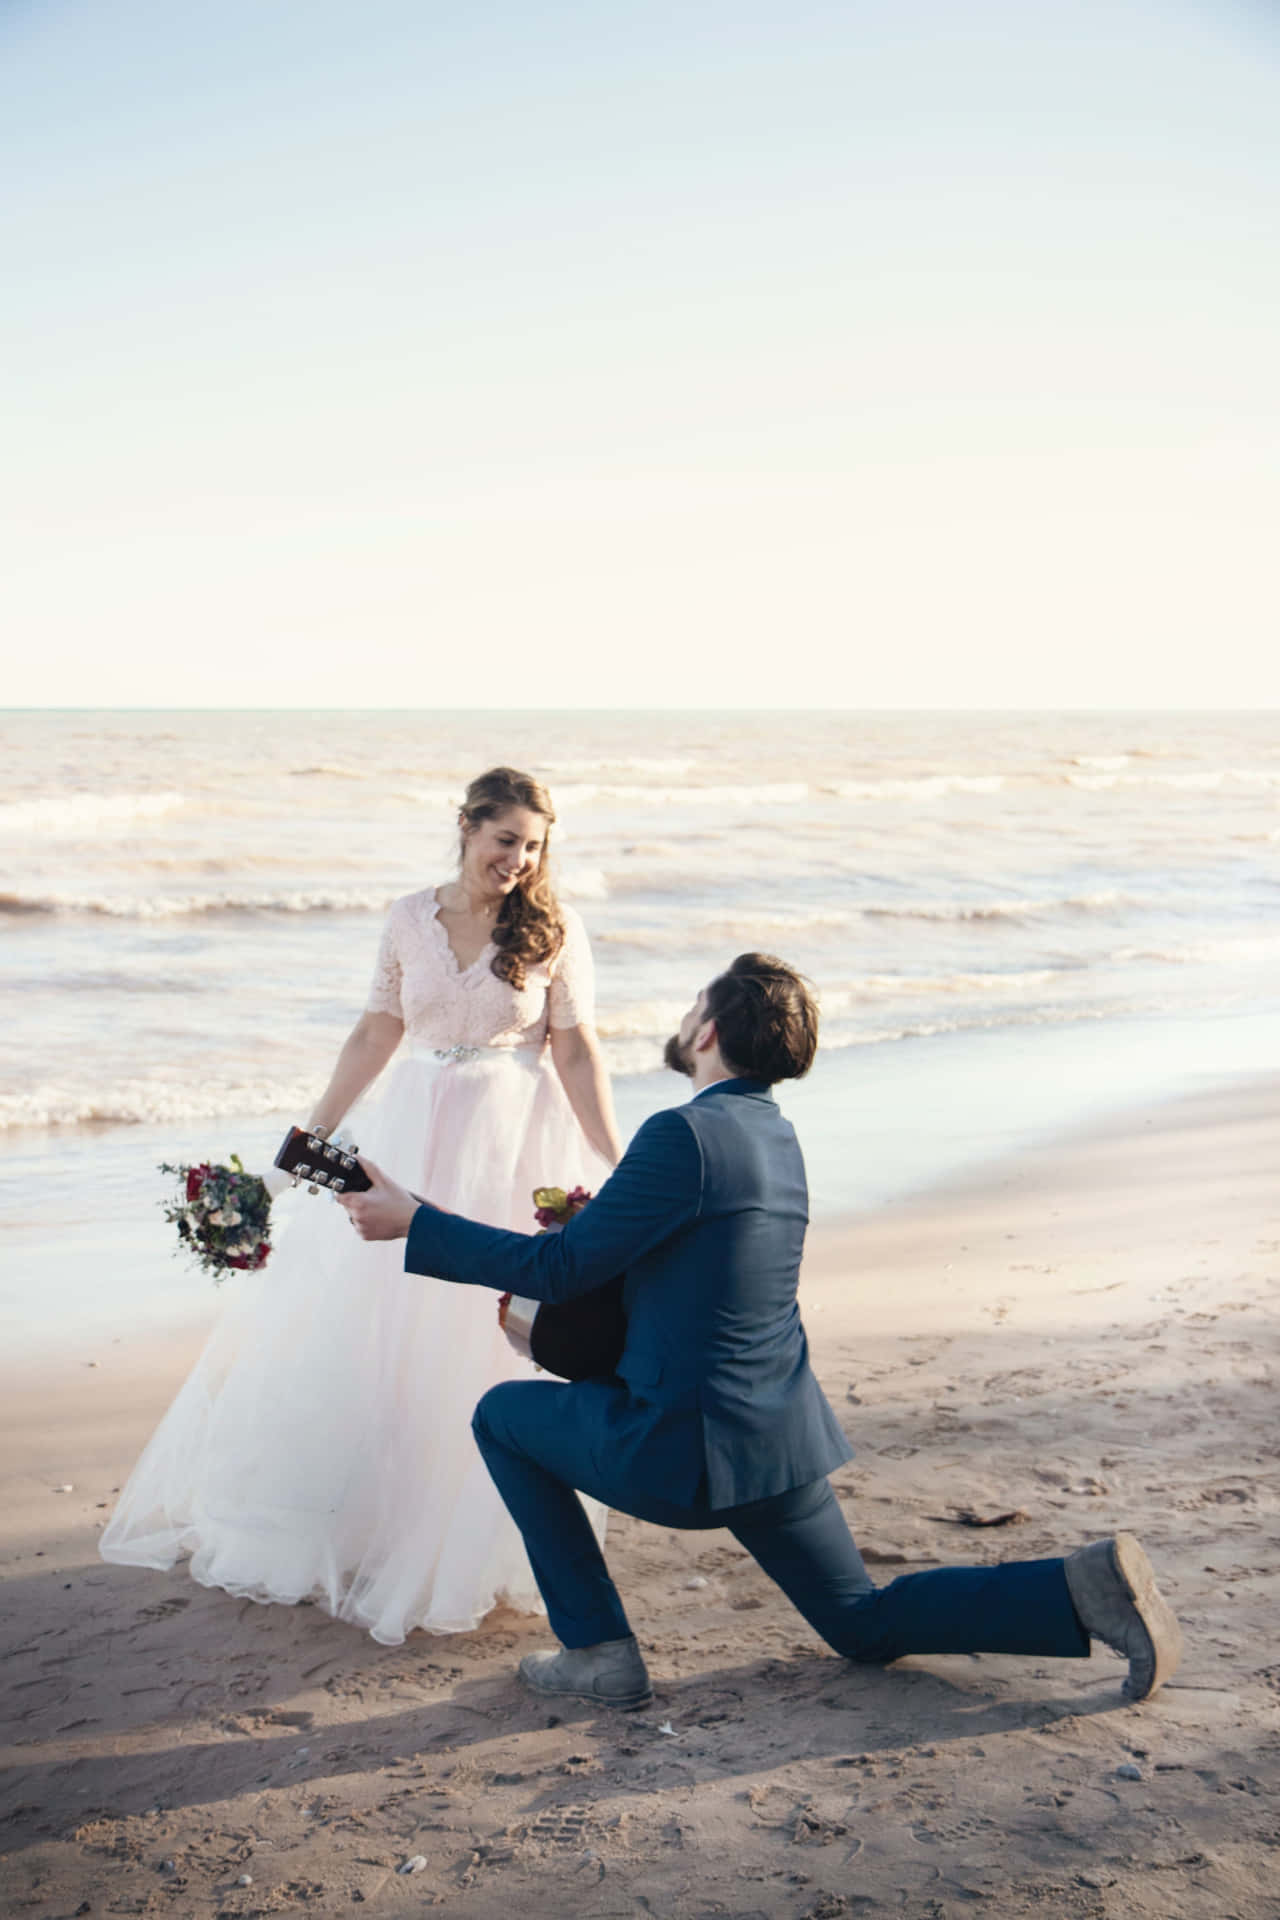 Fotodi Proposta Di Matrimonio In Spiaggia.